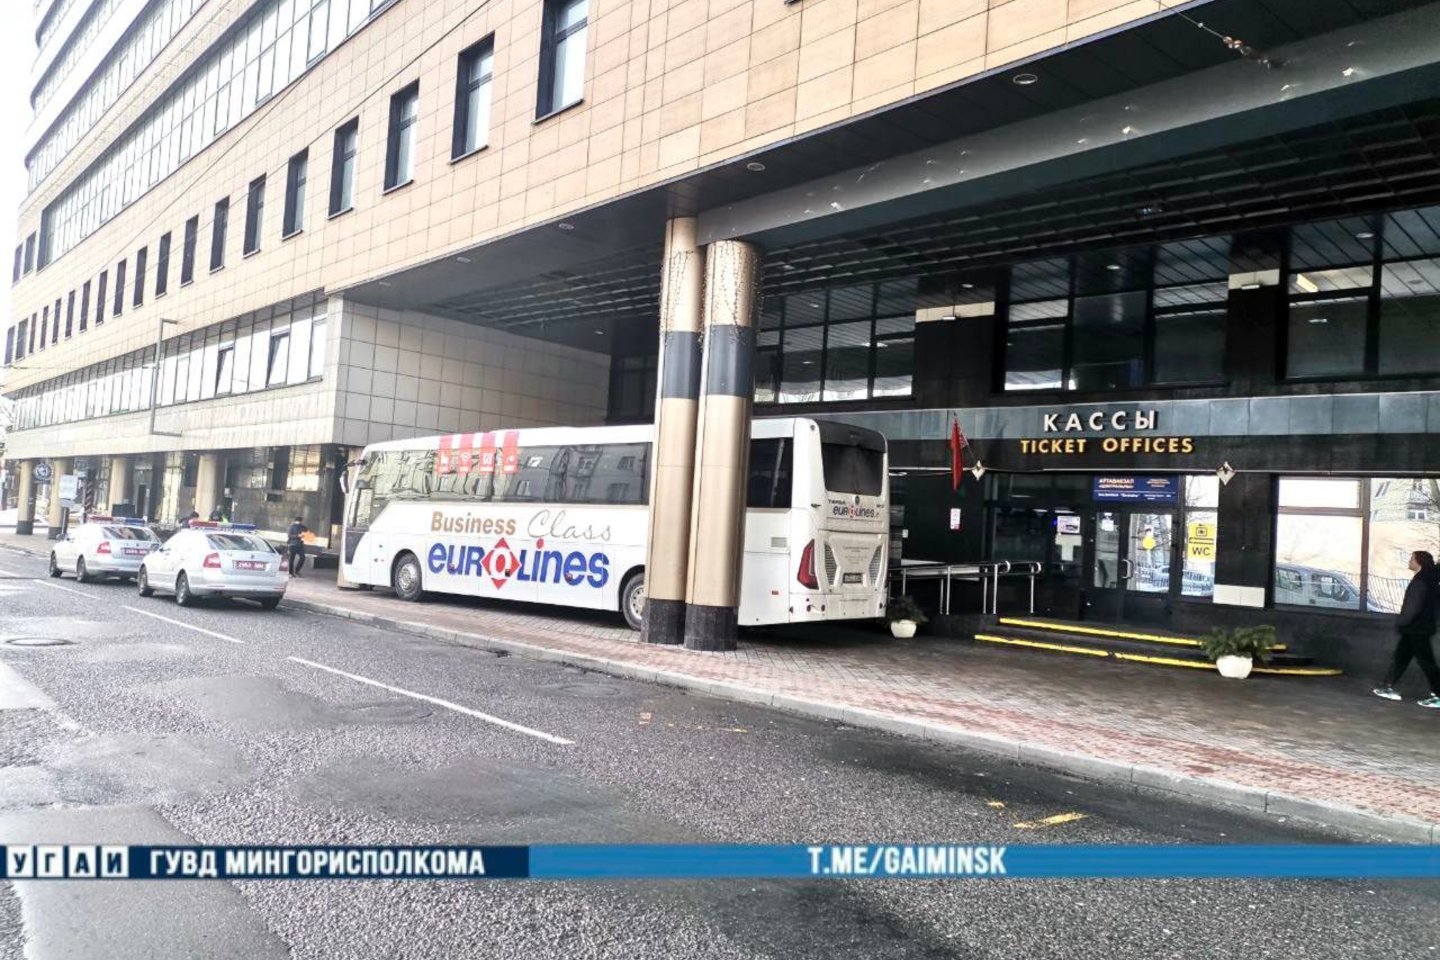  Minske smarkiai apdaužytas į Vilnių turėjęs važiuoti autobusas.<br> Minsko milicijos nuotr.